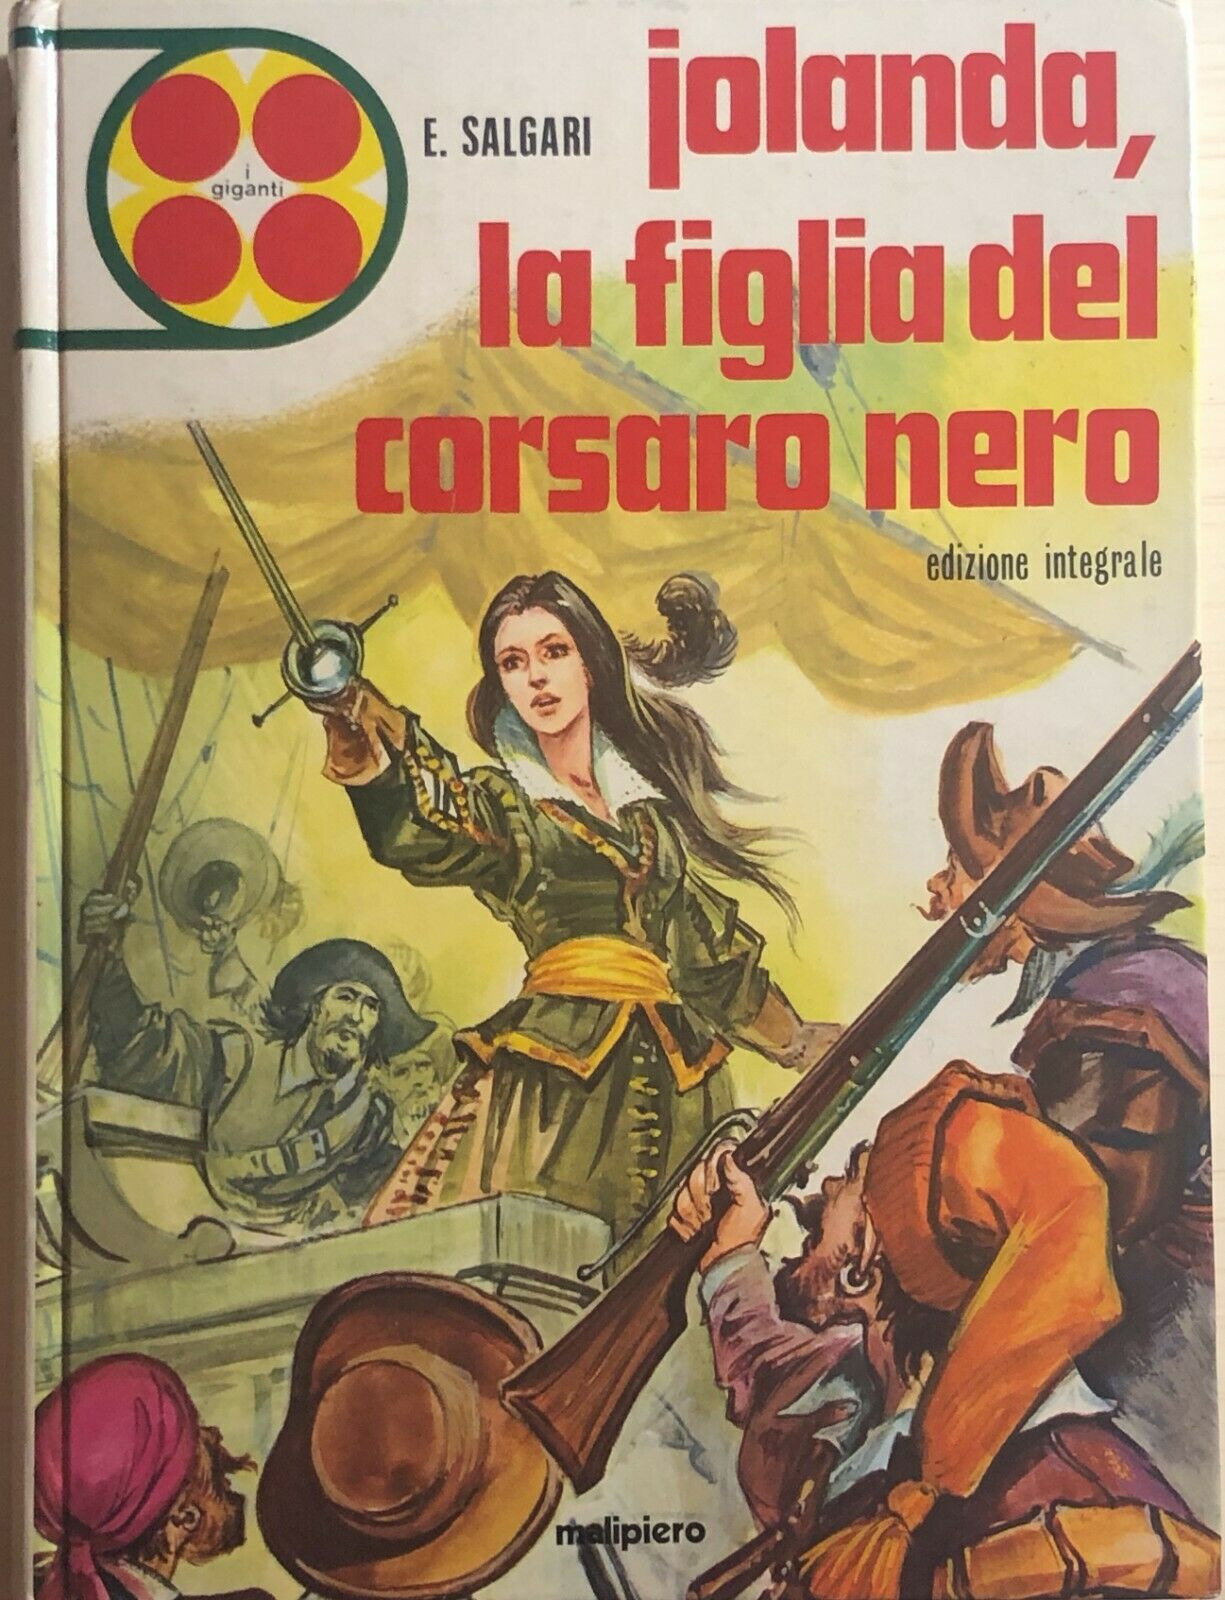 Jolanda, la figlia del corsaro nero di Emilio Salgari, 1974, Malipiero Editore